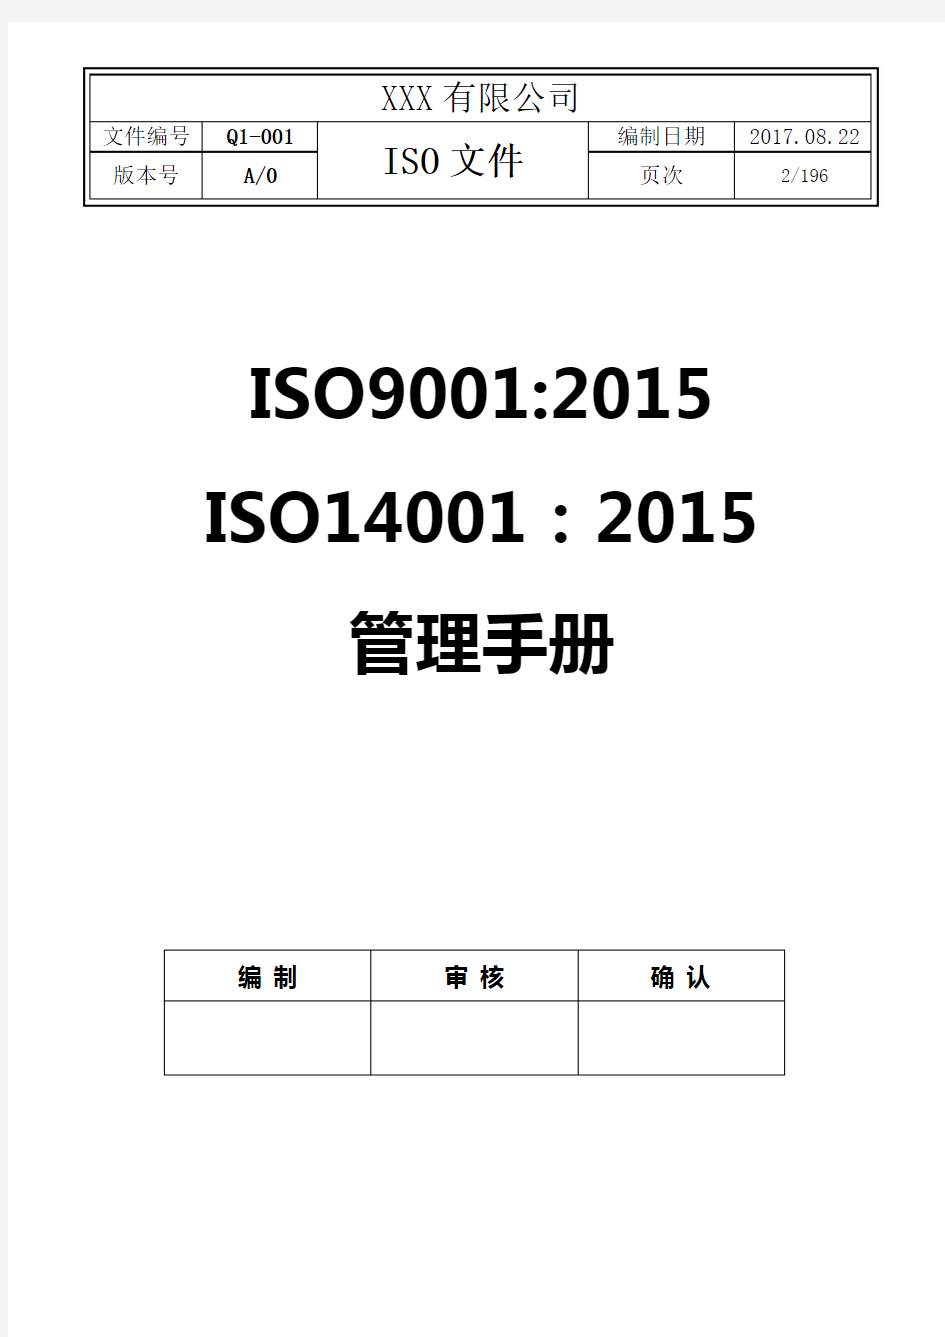 2017年最新精品全套ISO9001-2015,ISO14001-2015质量环境体系文件(管理手册程序文件共196页)